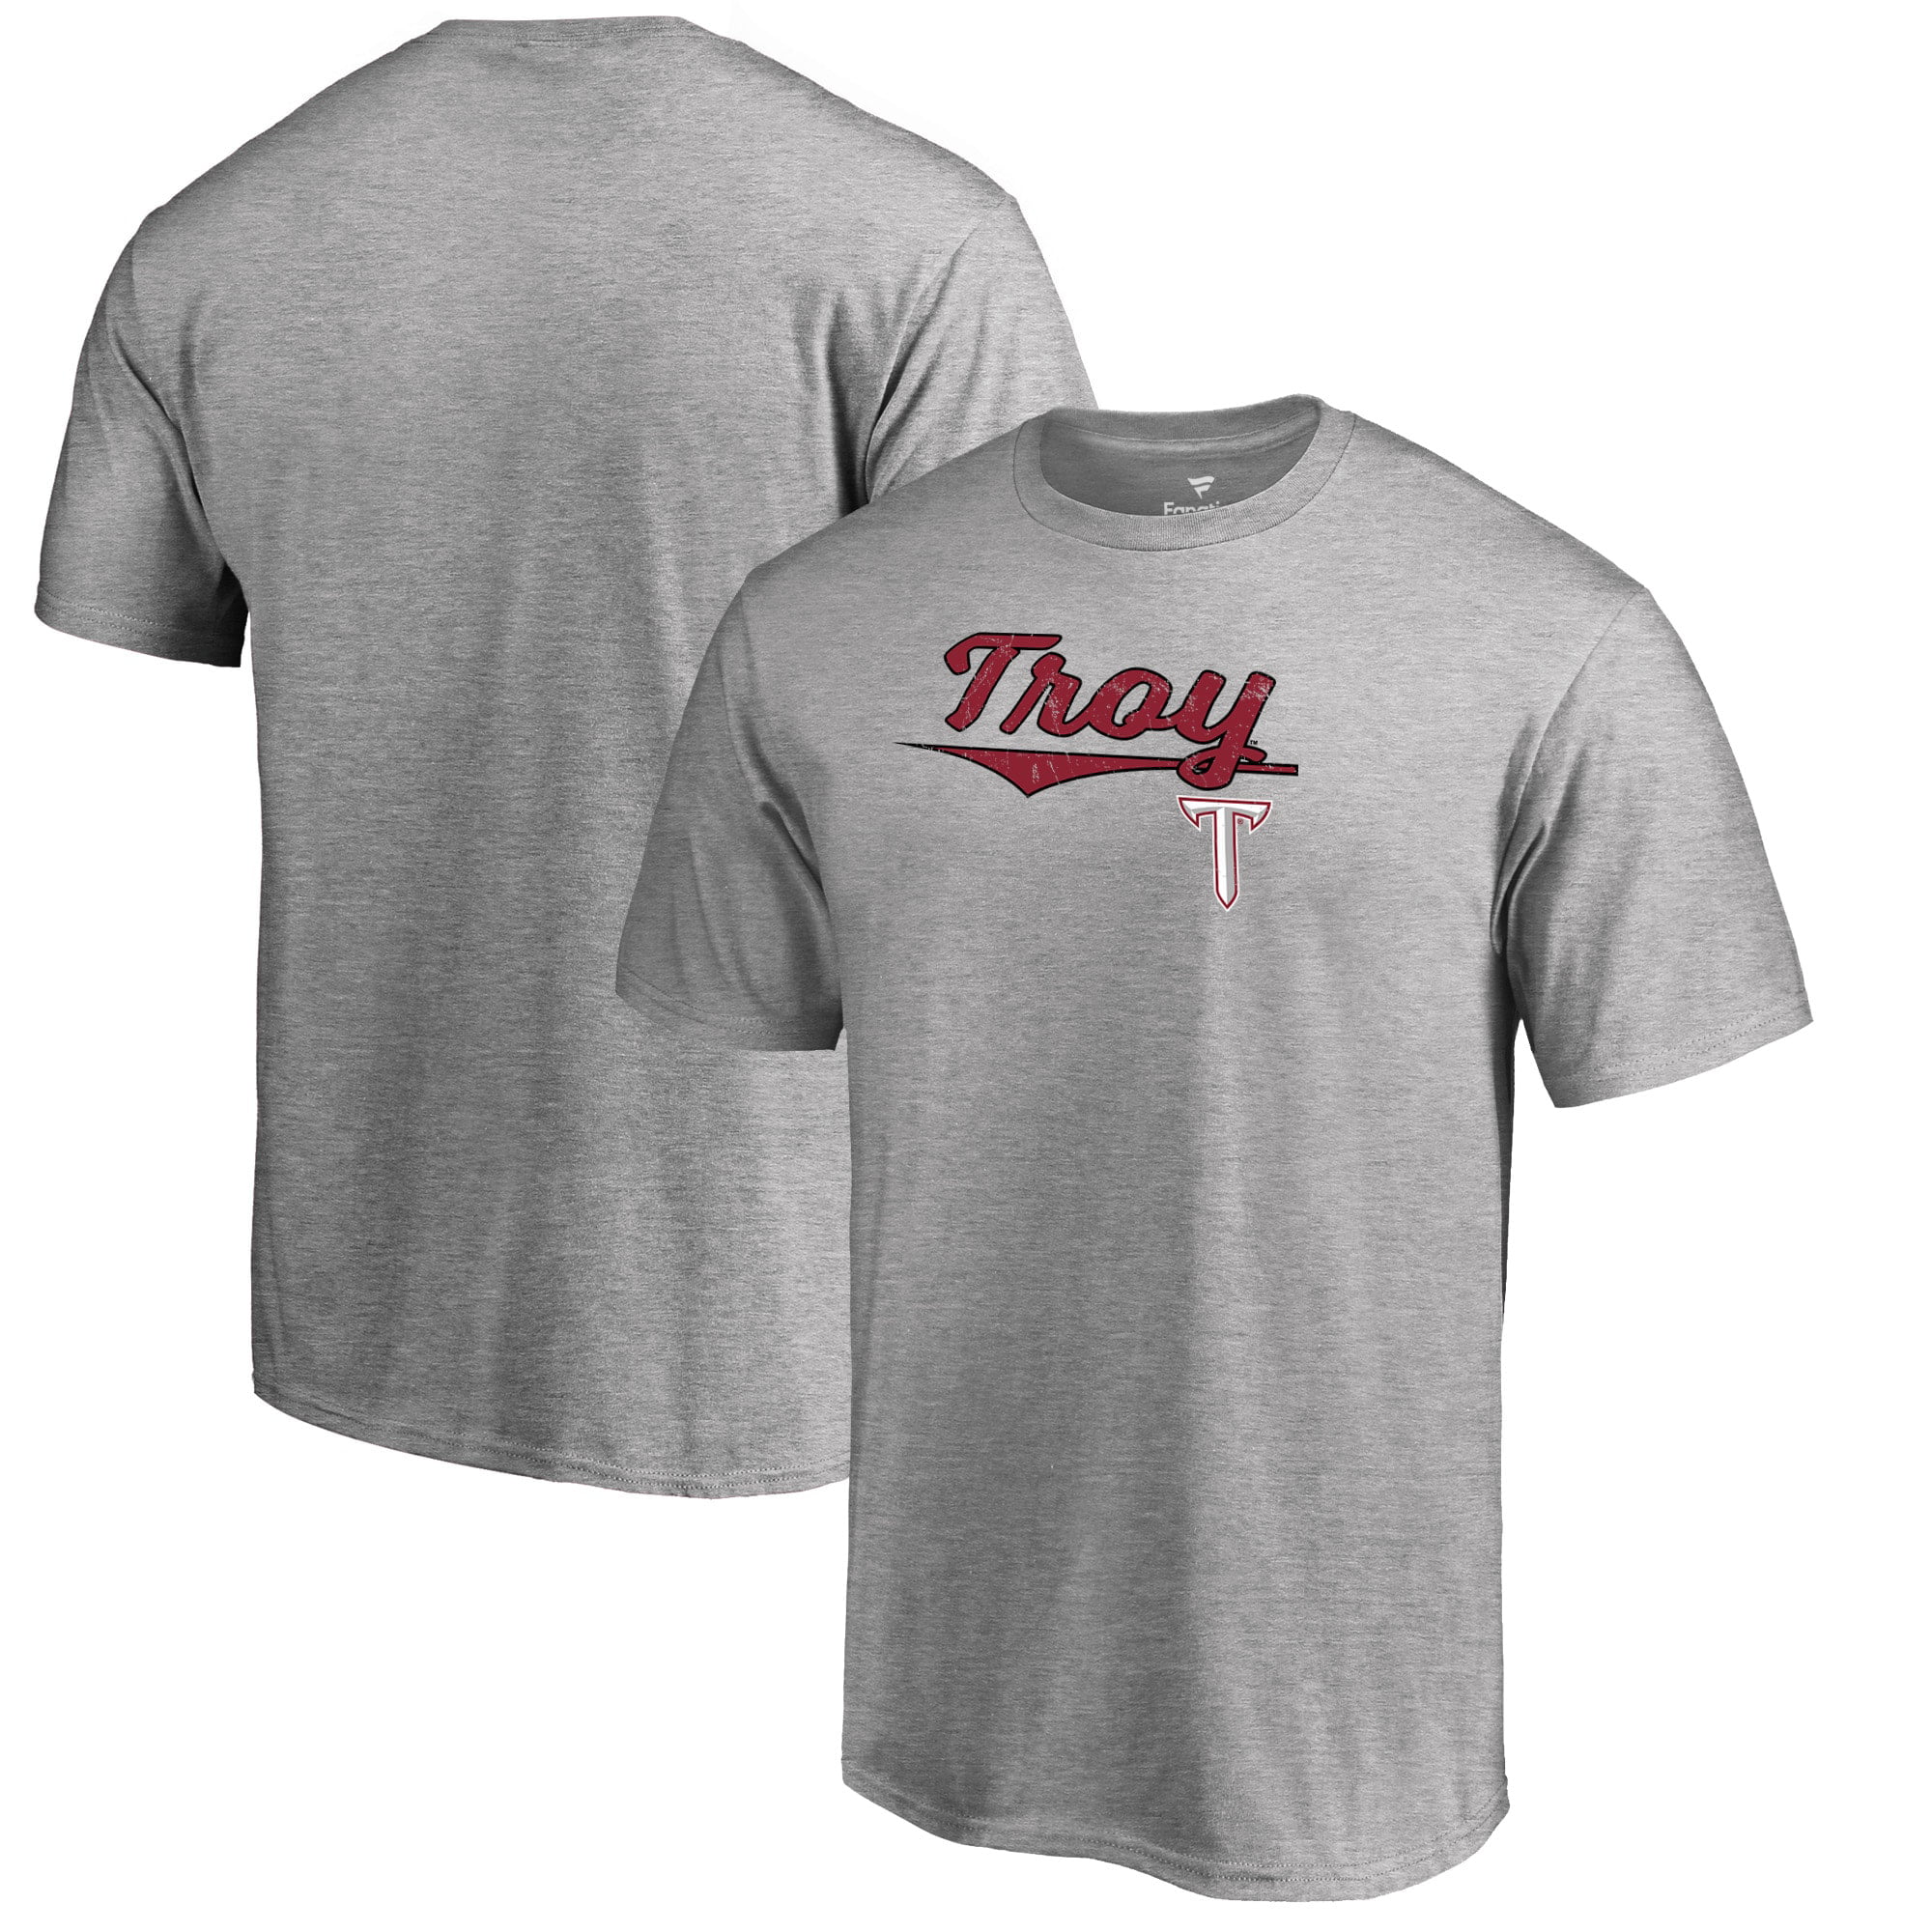 Troy University Trojans School Name Wordmark Text Tee Short Sleeve Adult T-Shirt